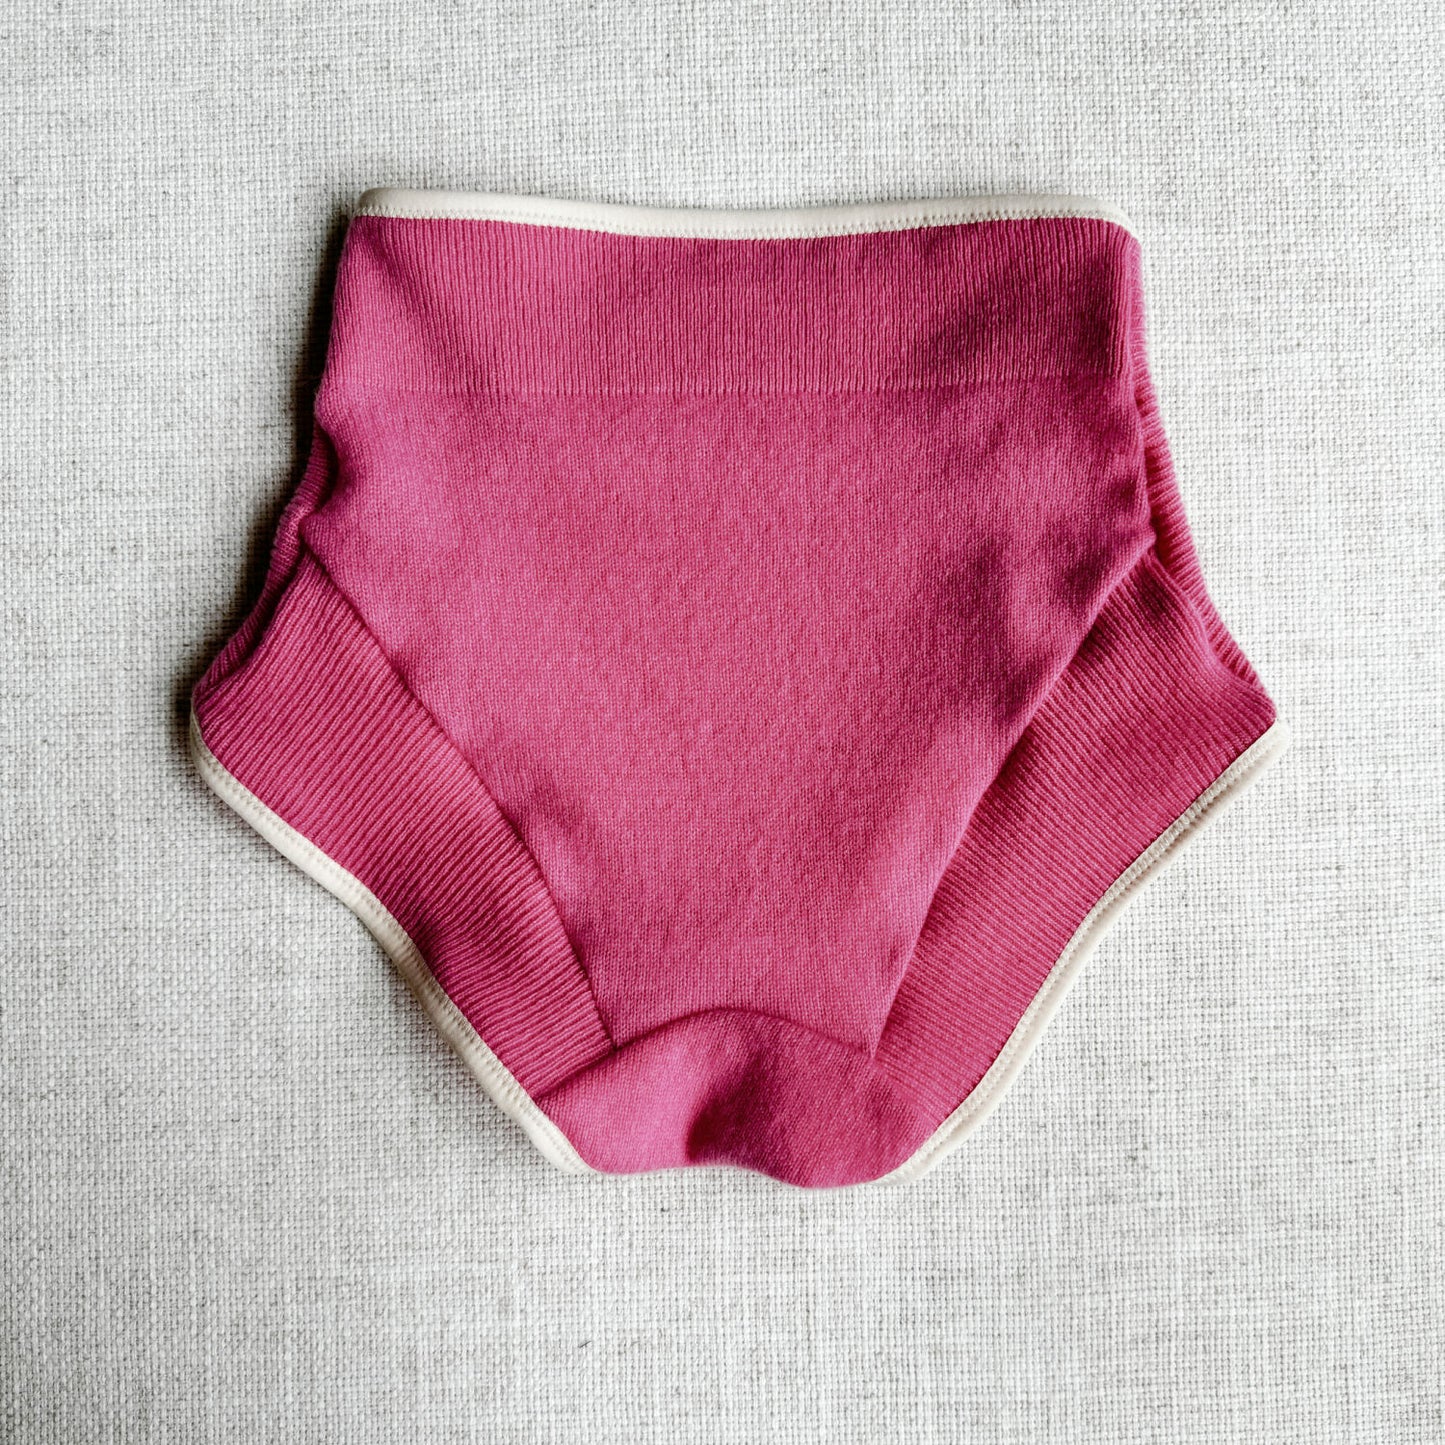 Shop high-waist cashmere underwear for women, made in Canada